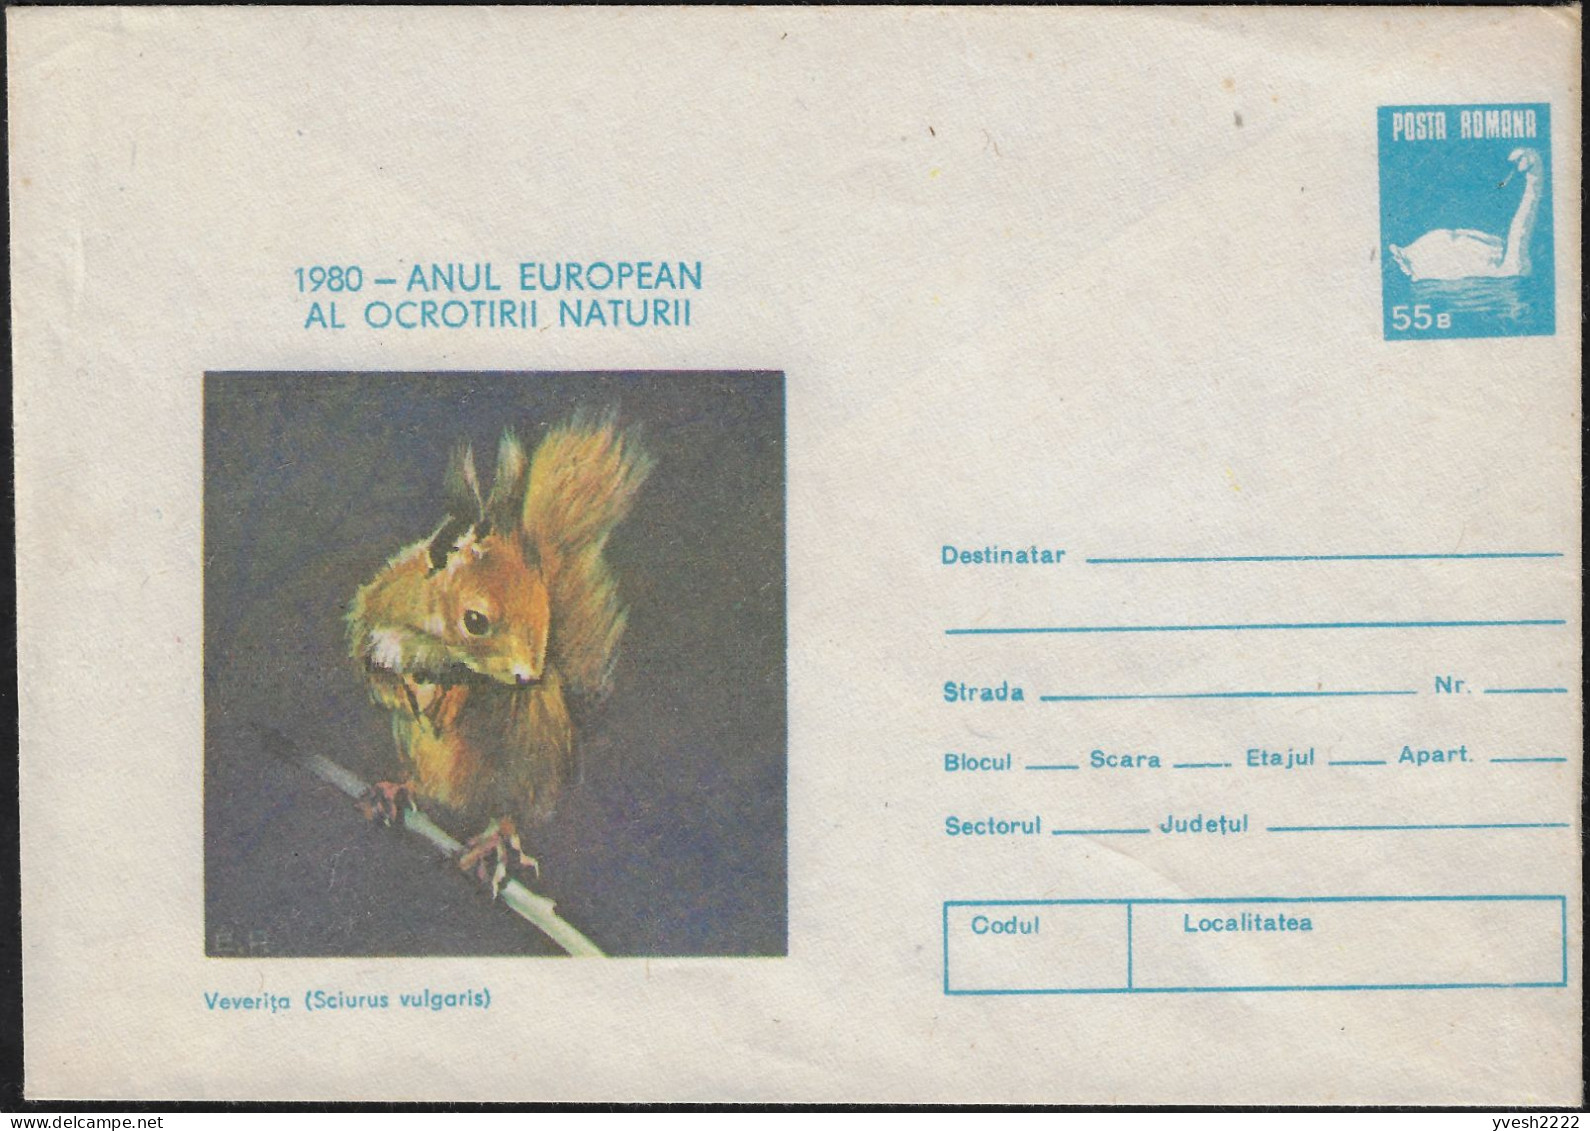 Roumanie 1980. Entier Postal, Année Européenne De La Protection De La Nature. Écureuil, Cygne - Rongeurs